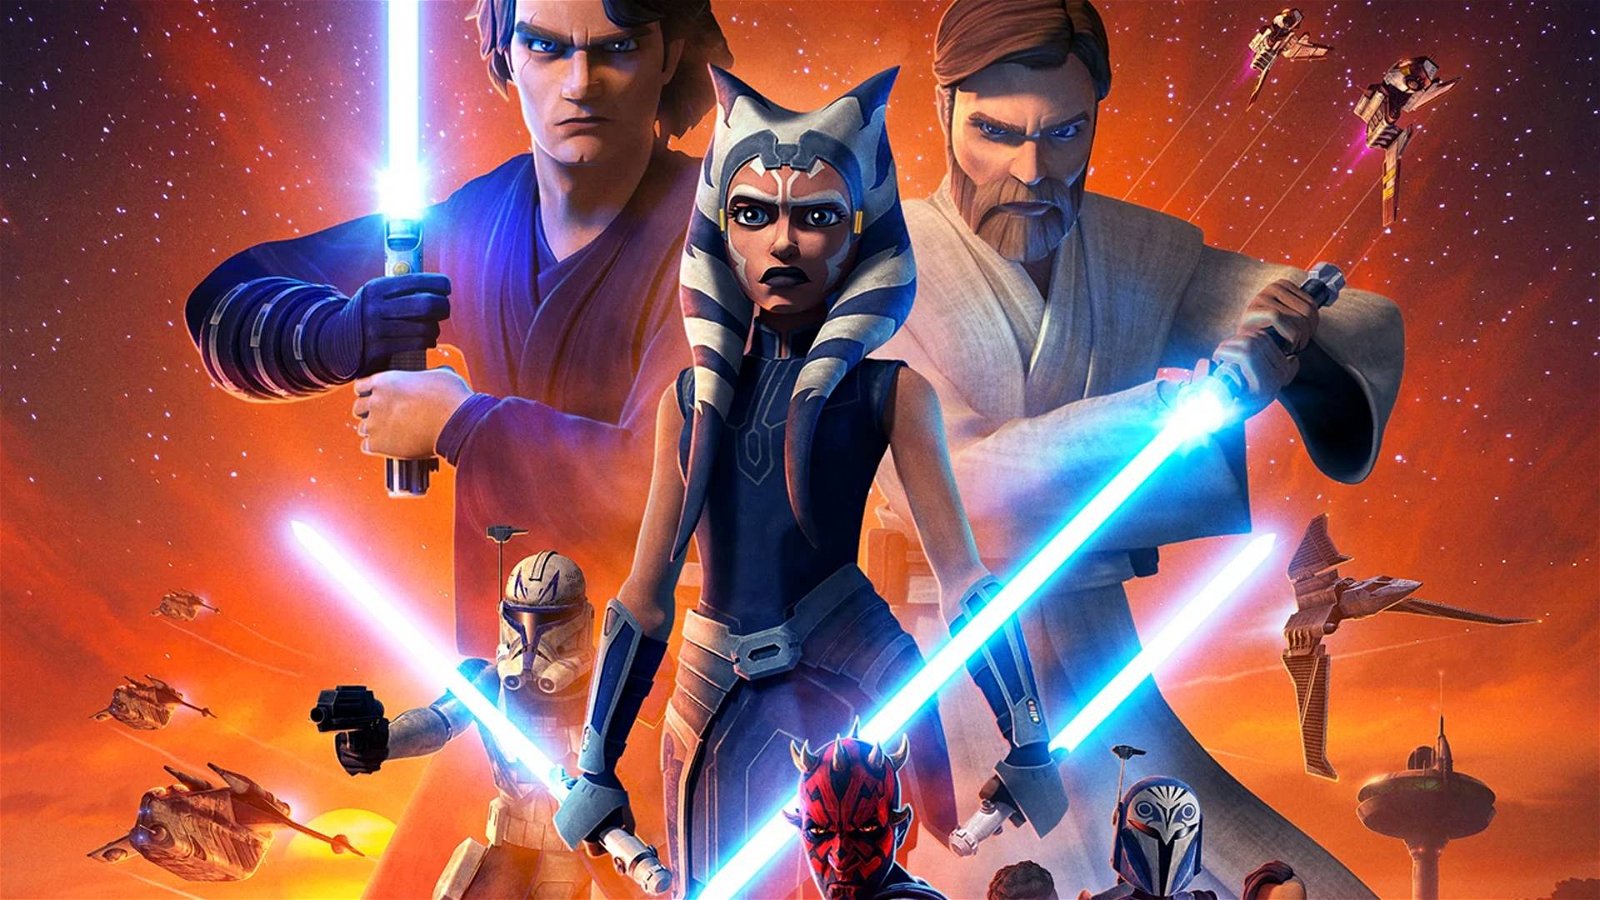 Immagine di Star Wars: The Clone Wars, cosa ci aspetta nella settima stagione?